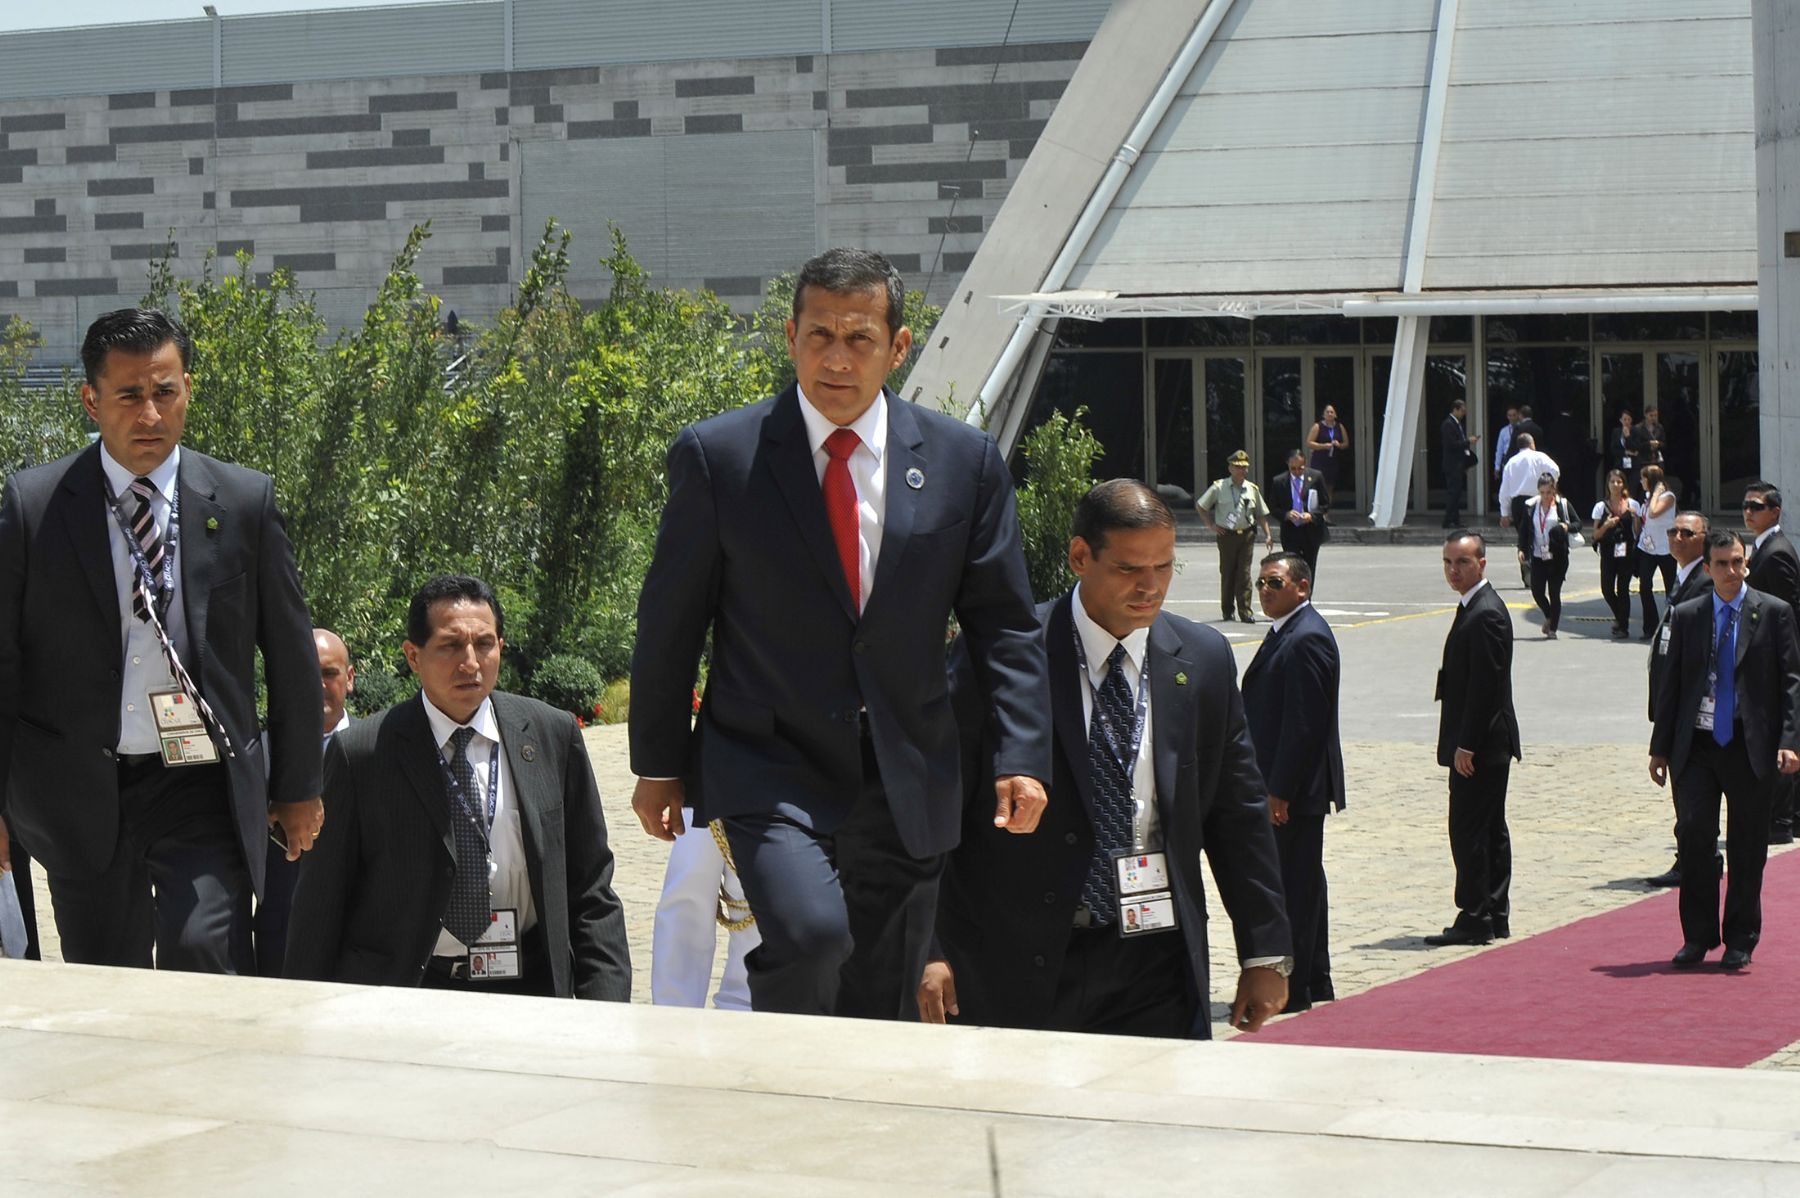 Jefe de estado Ollanta Humala finaliza su participación en la Cumbre CELAC realizada en el centro de convenciones Espacio Riesco de Santiago de Chile.Foto: ANDINA/Prensa Presidencia